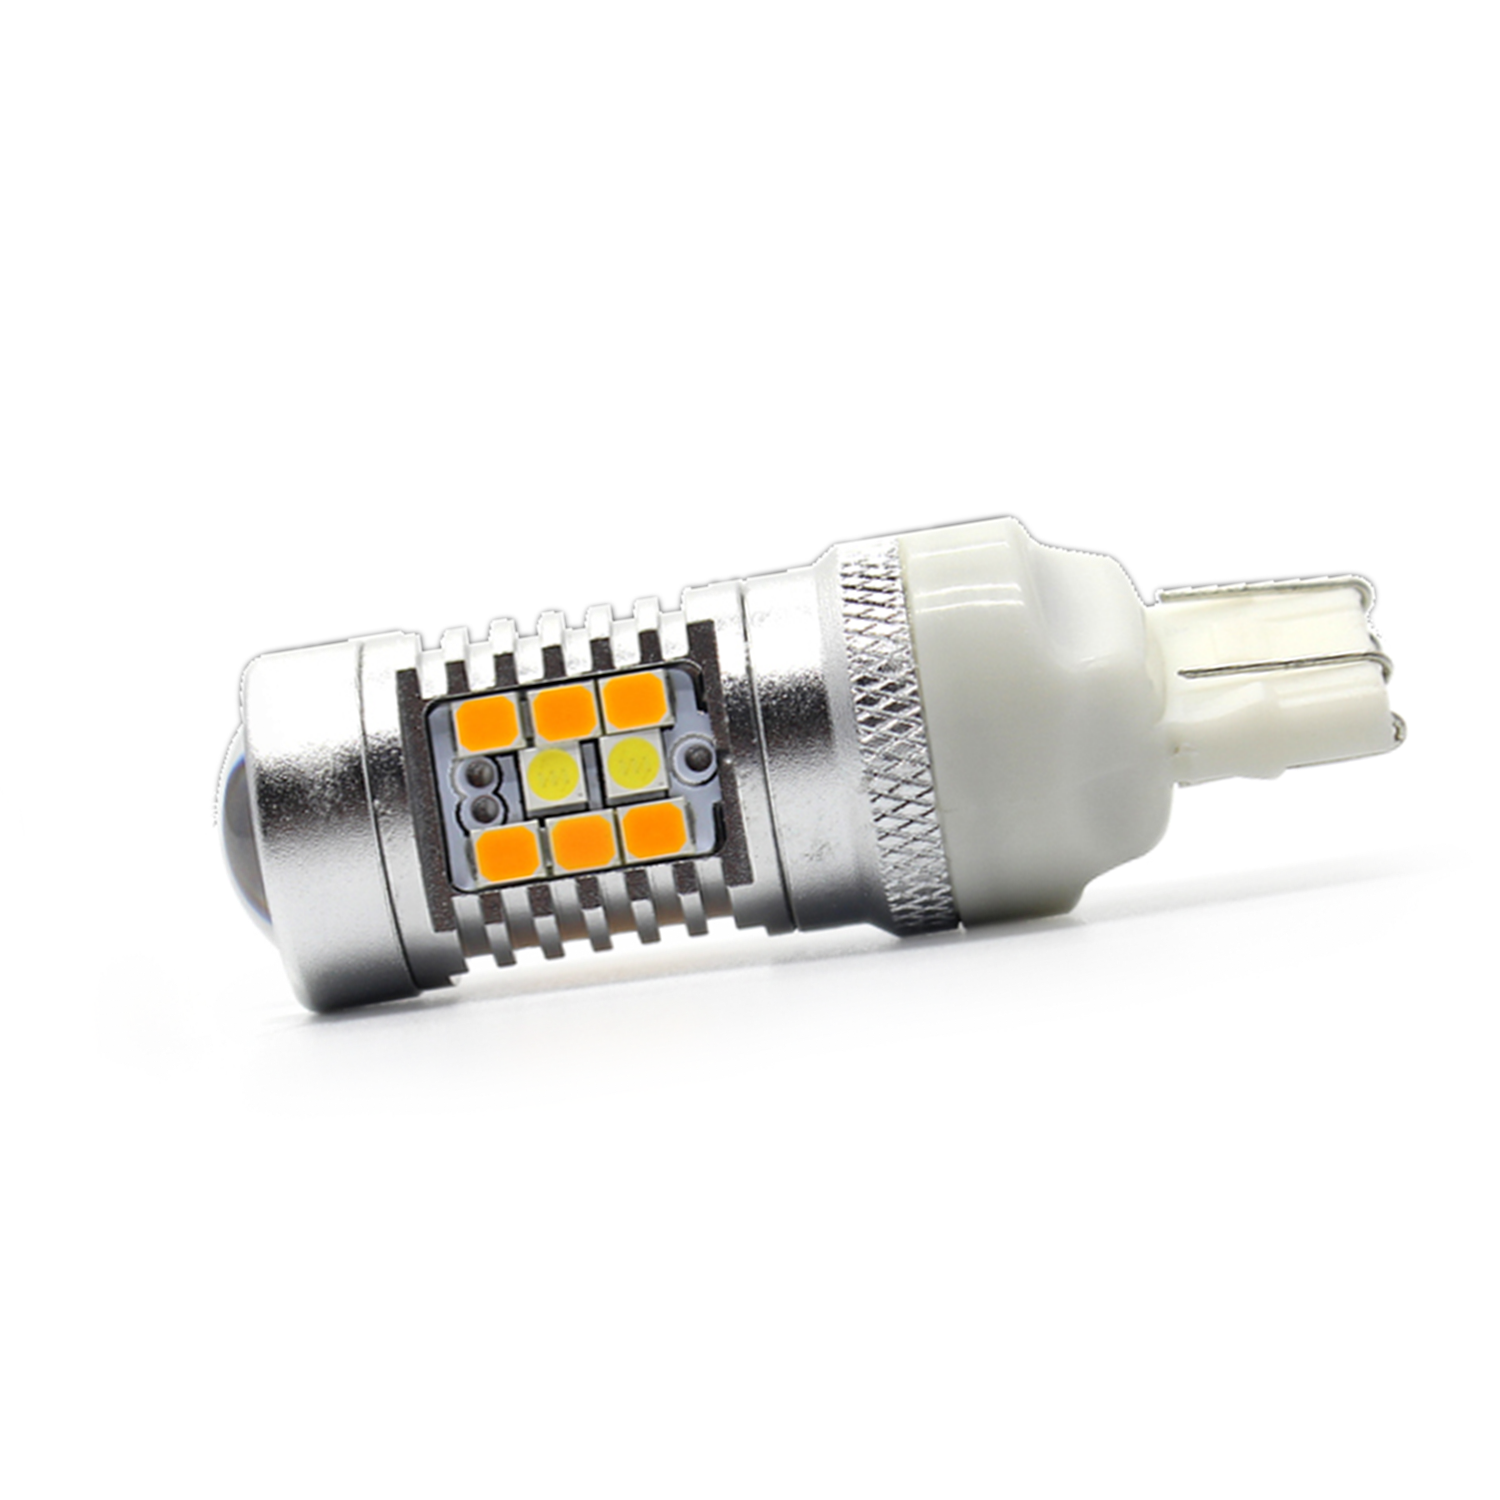 2021 Chevrolet Traverse LED Blinker Lamp Light 7444NA Bulbs Amber